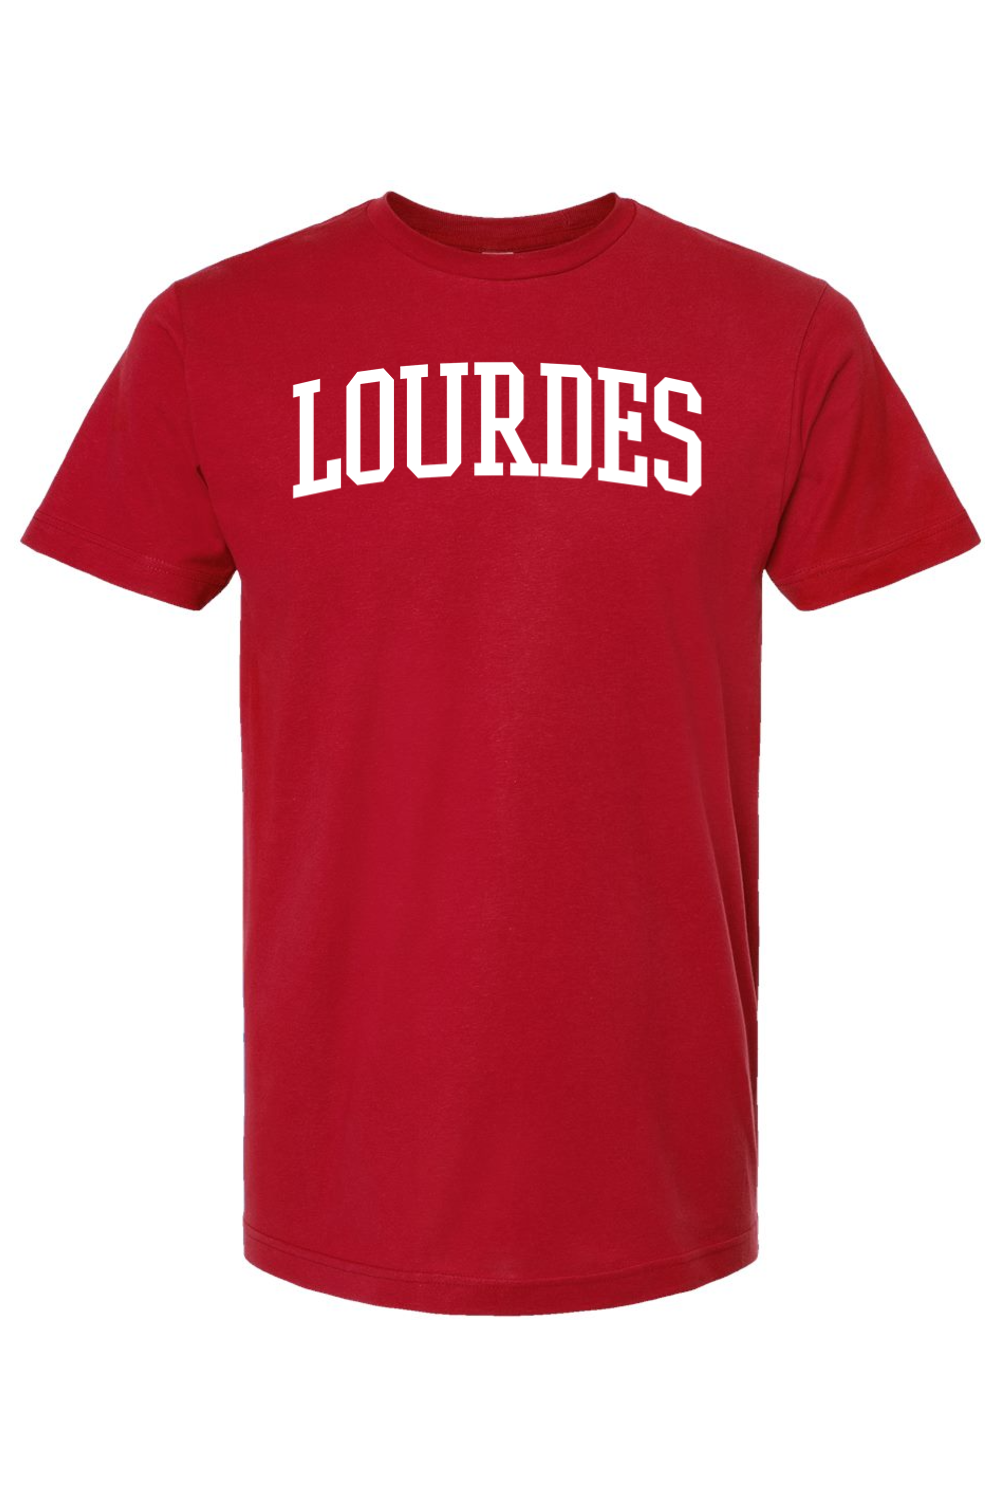 Lourdes - Collegiate